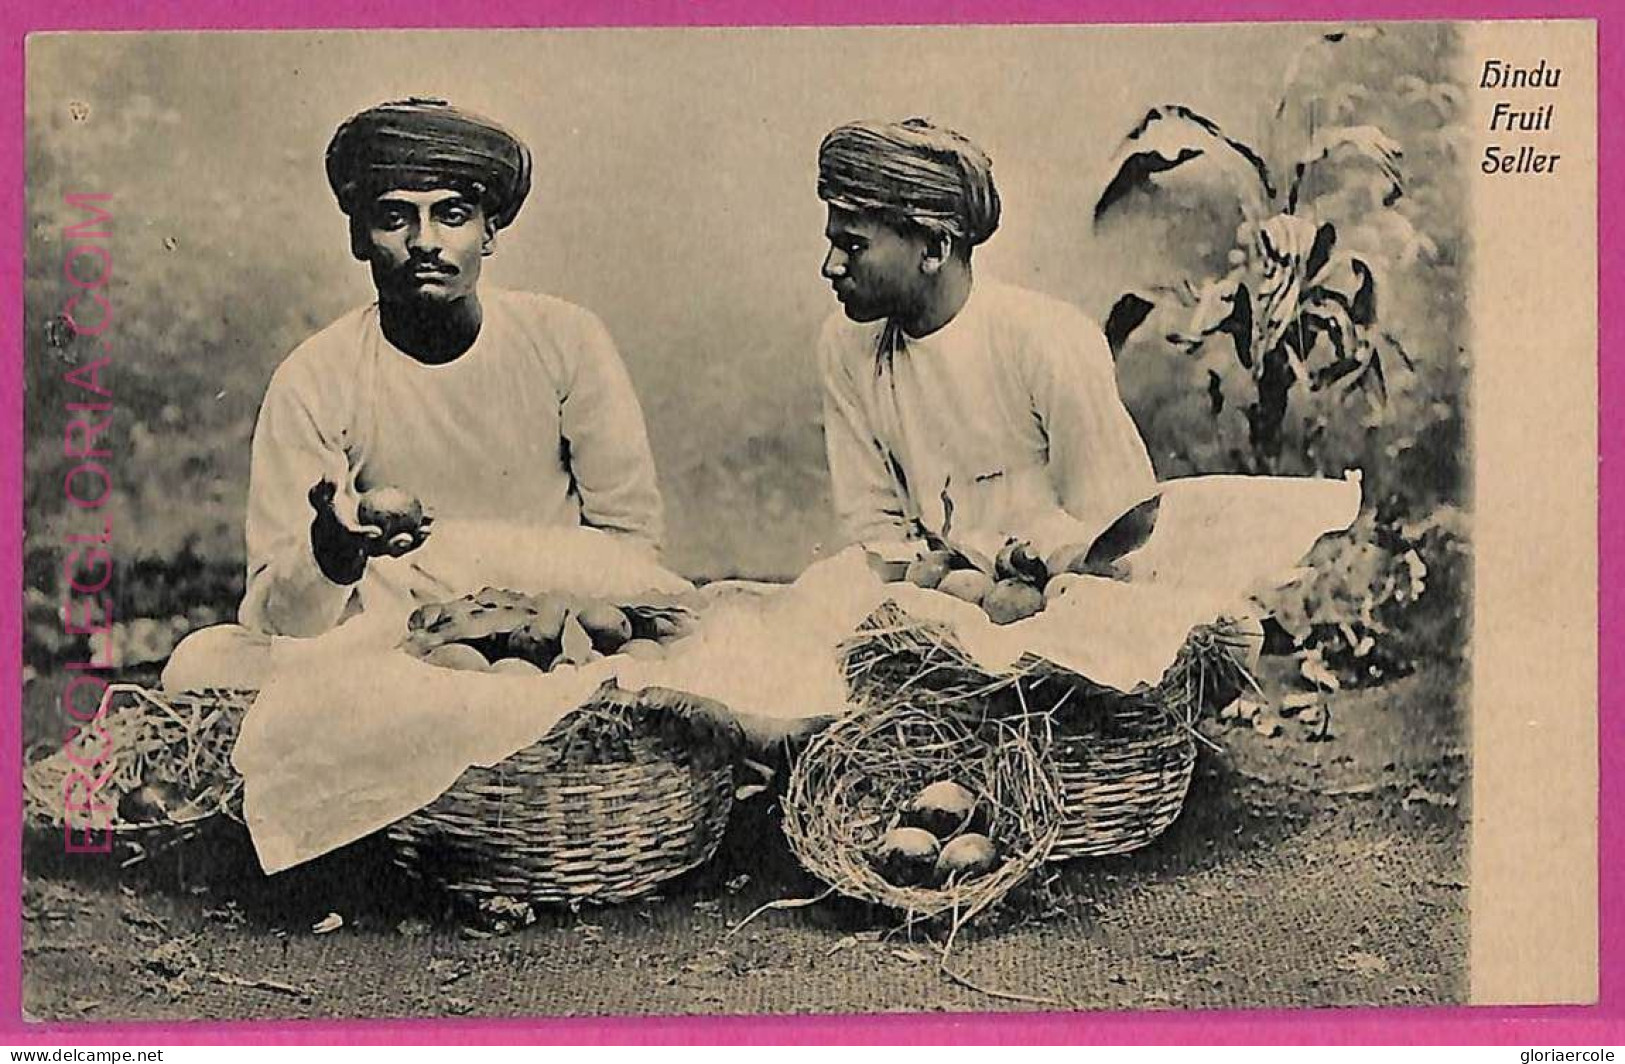 Ag3778  - INDIA - VINTAGE POSTCARD  - Gindu Fruit Seller, Ethnic - Indien